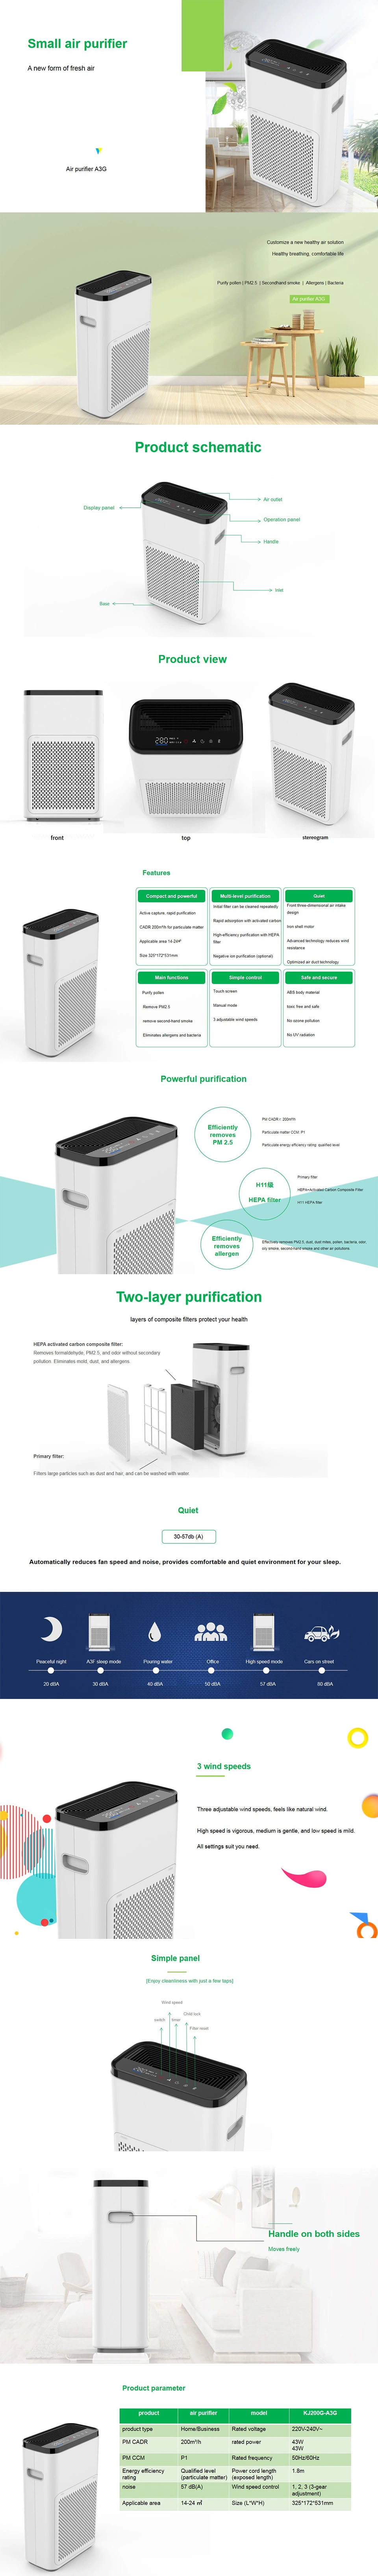 Smart Home Air Purifier HEPA Filter Portable Air Purifier Desktop Air Cleaner